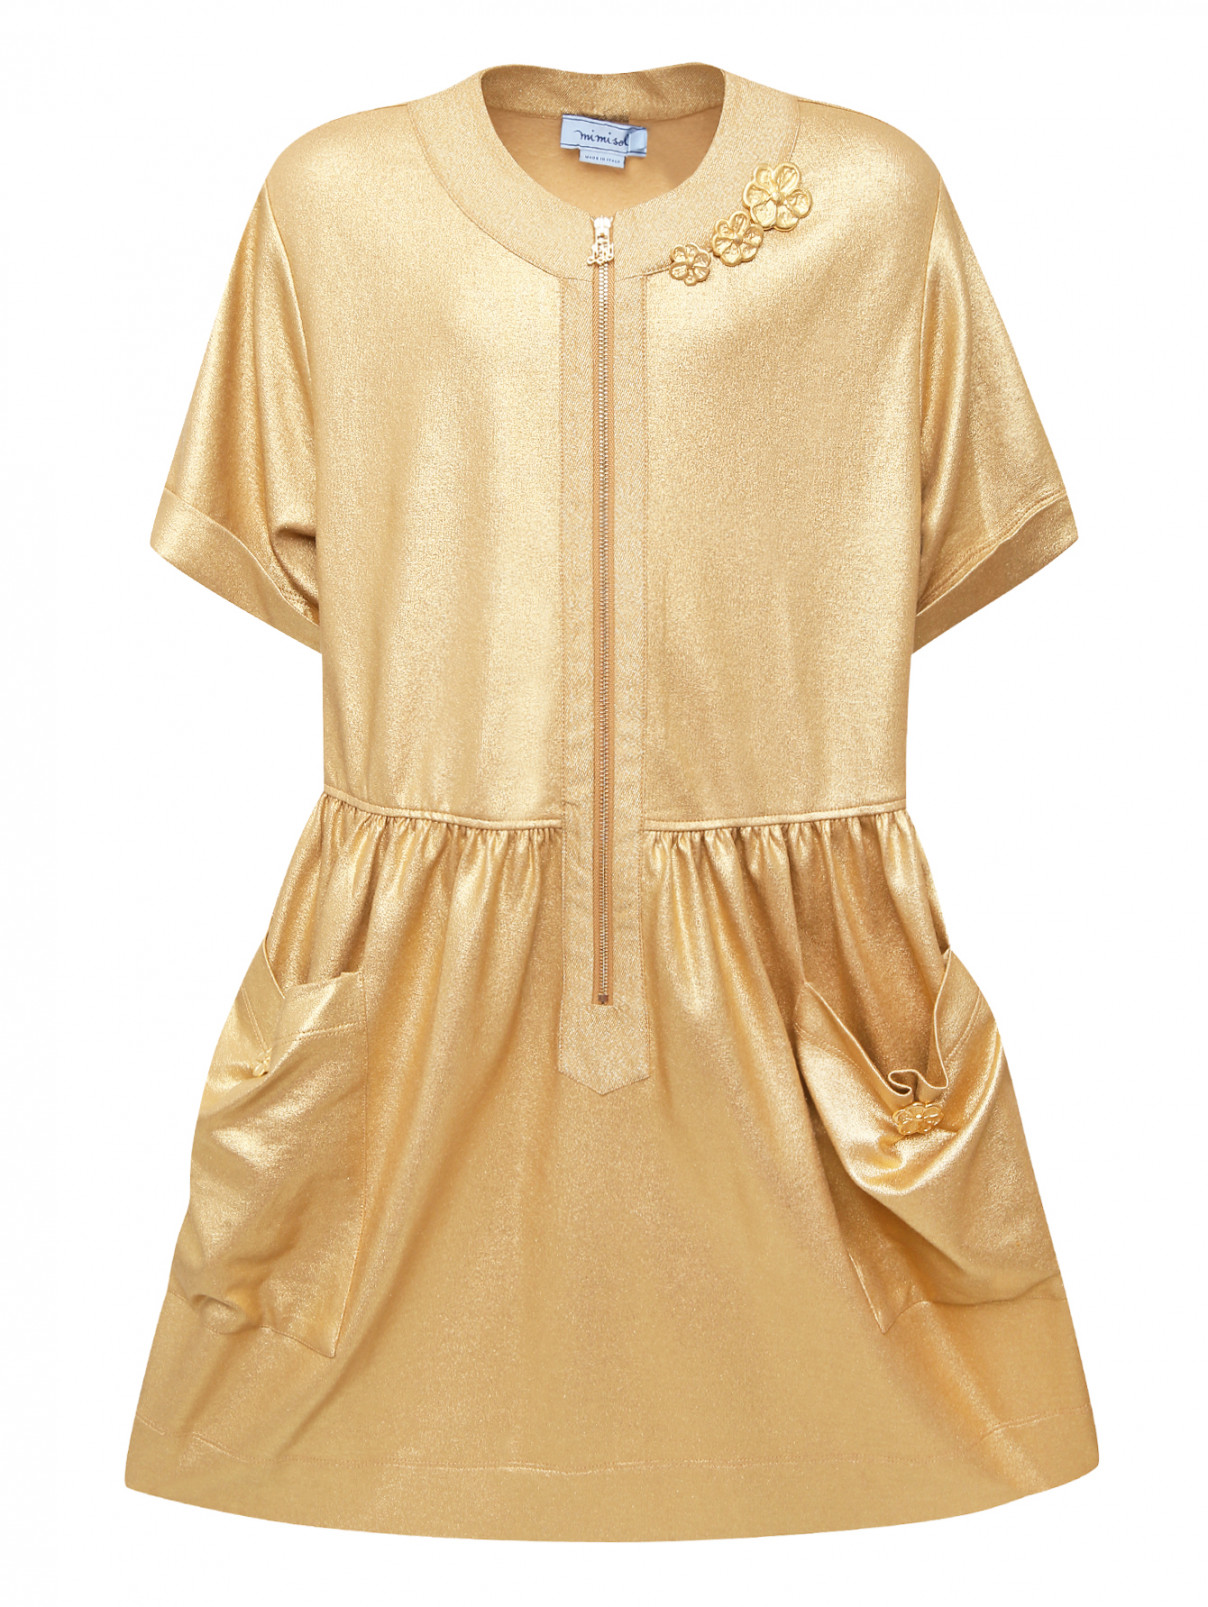 Трикотажное платье с карманами MiMiSol  –  Общий вид  – Цвет:  Золотой